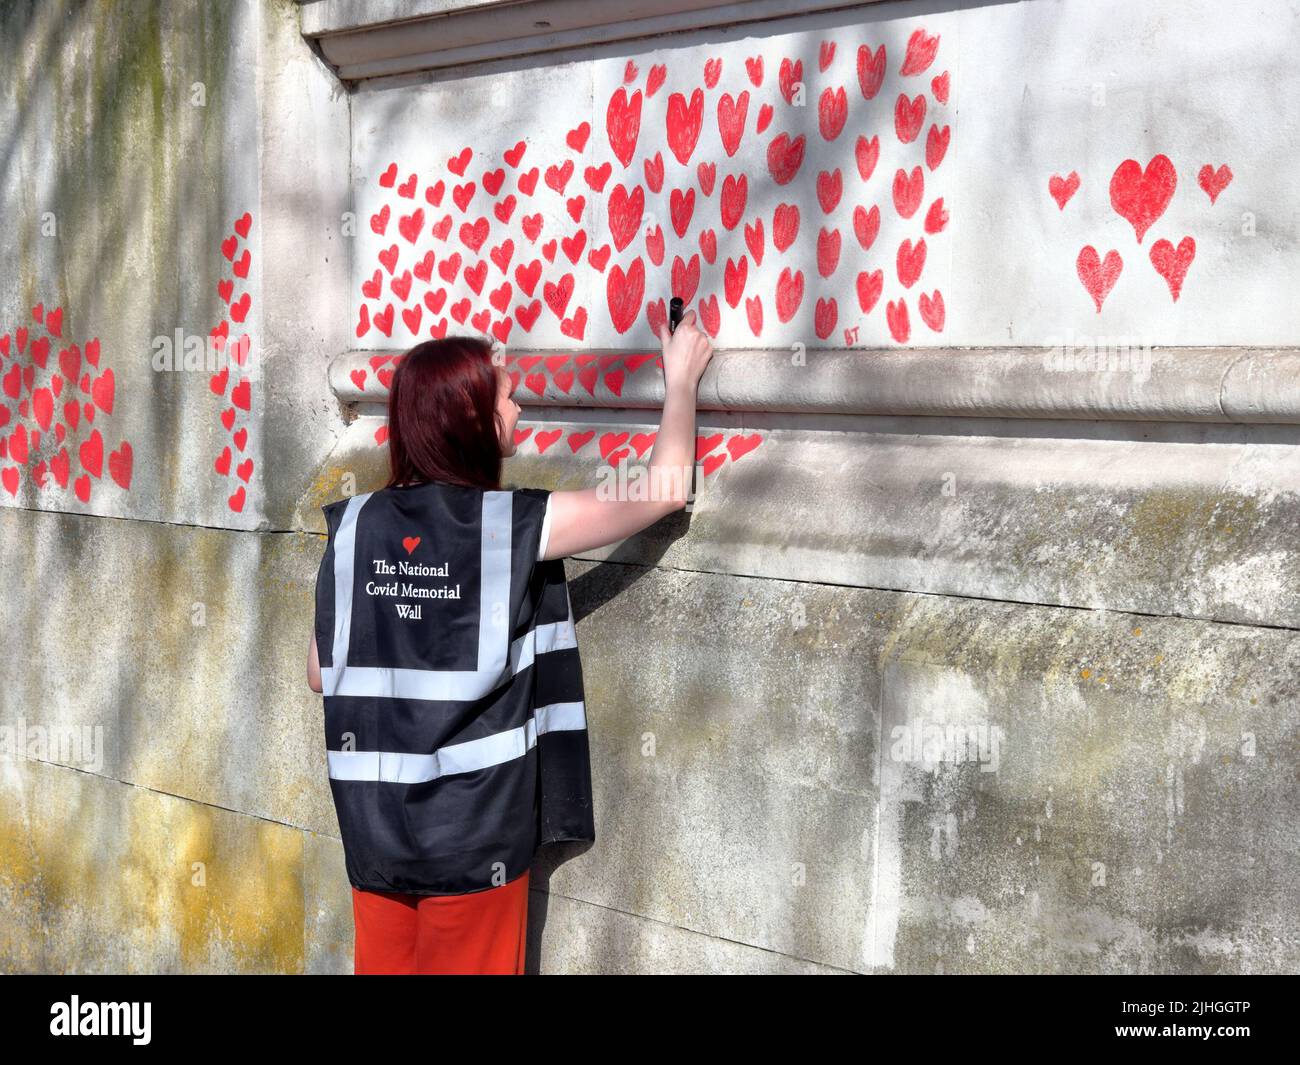 Londra, UK - 30 marzo 2021: Il National Covid Memorial Wall, volontari che dipingono 150.000 cuori rossi per commemorare i morti del Covid-19 Foto Stock